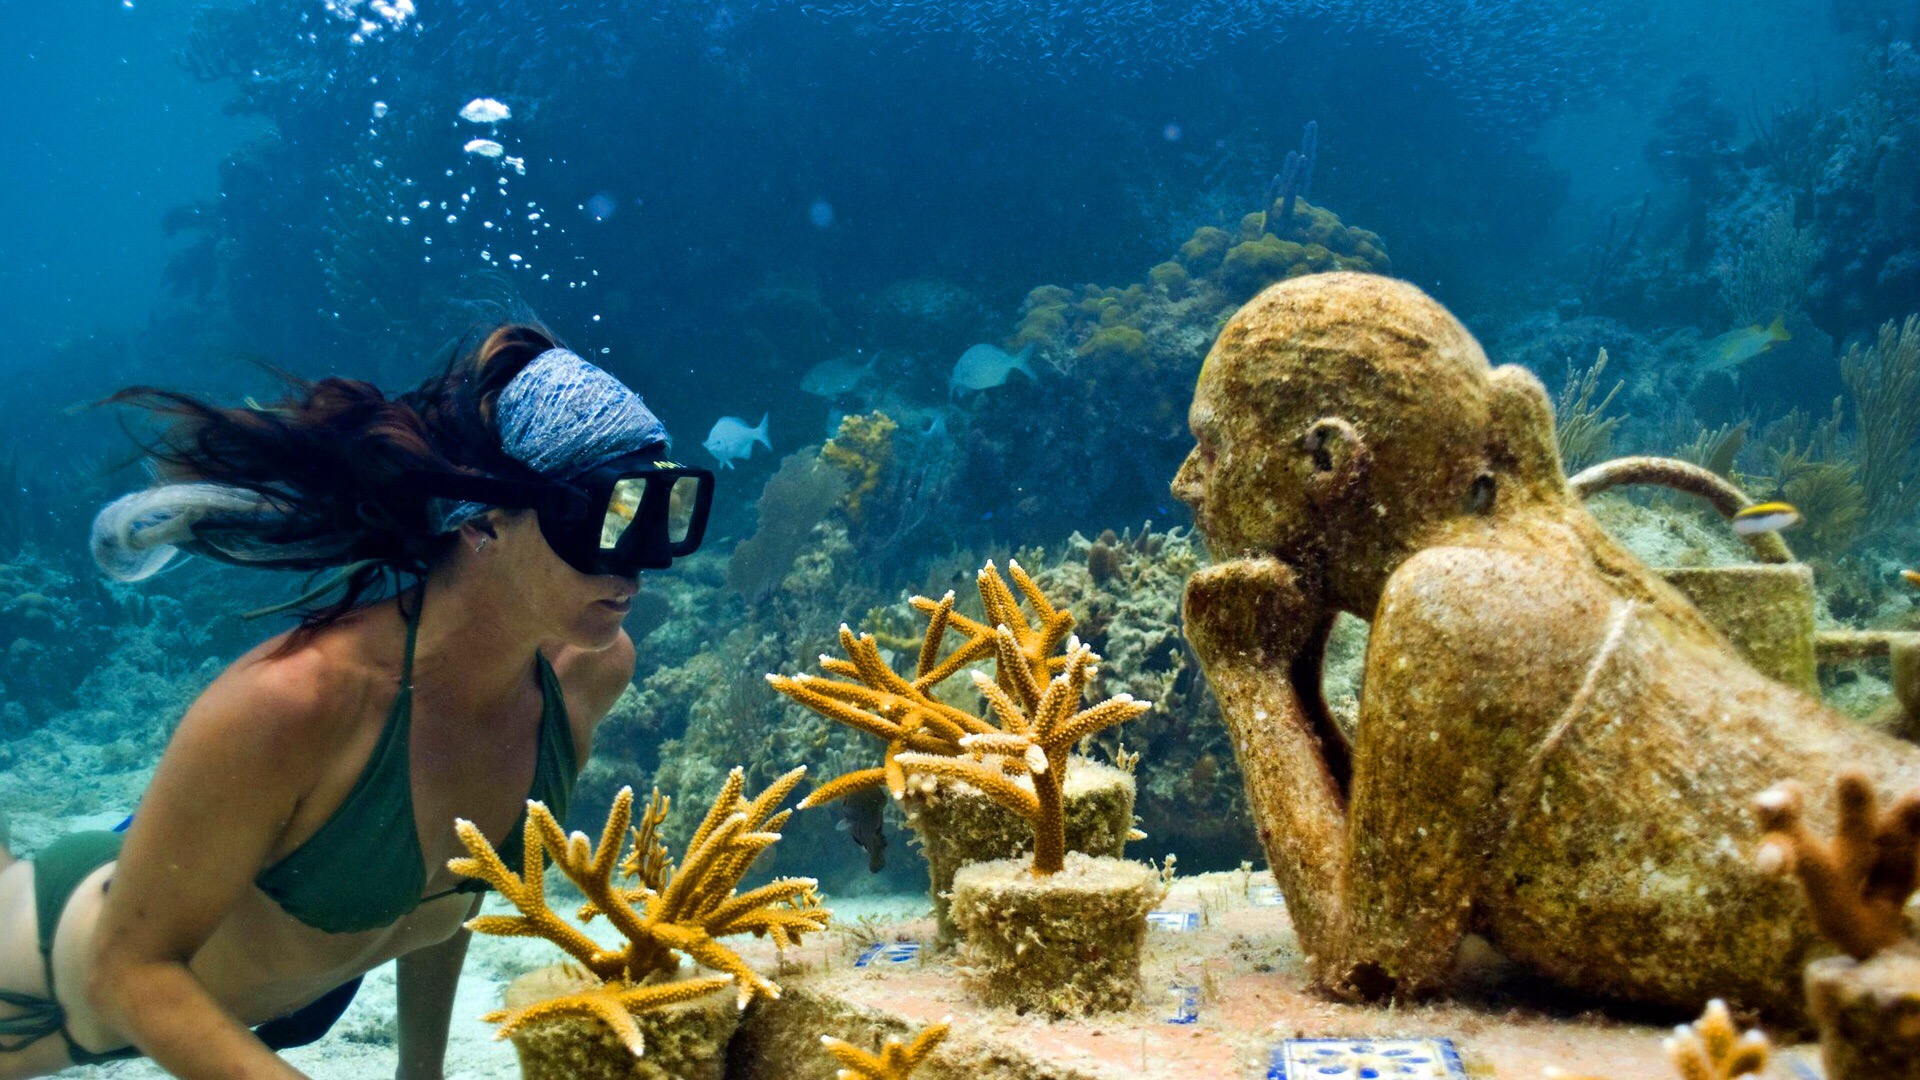 墨西哥海底雕塑博物馆，不仅是艺术创作，更是对大自然的保护。在墨西哥坎昆女人岛附近的海域，有一座全世界